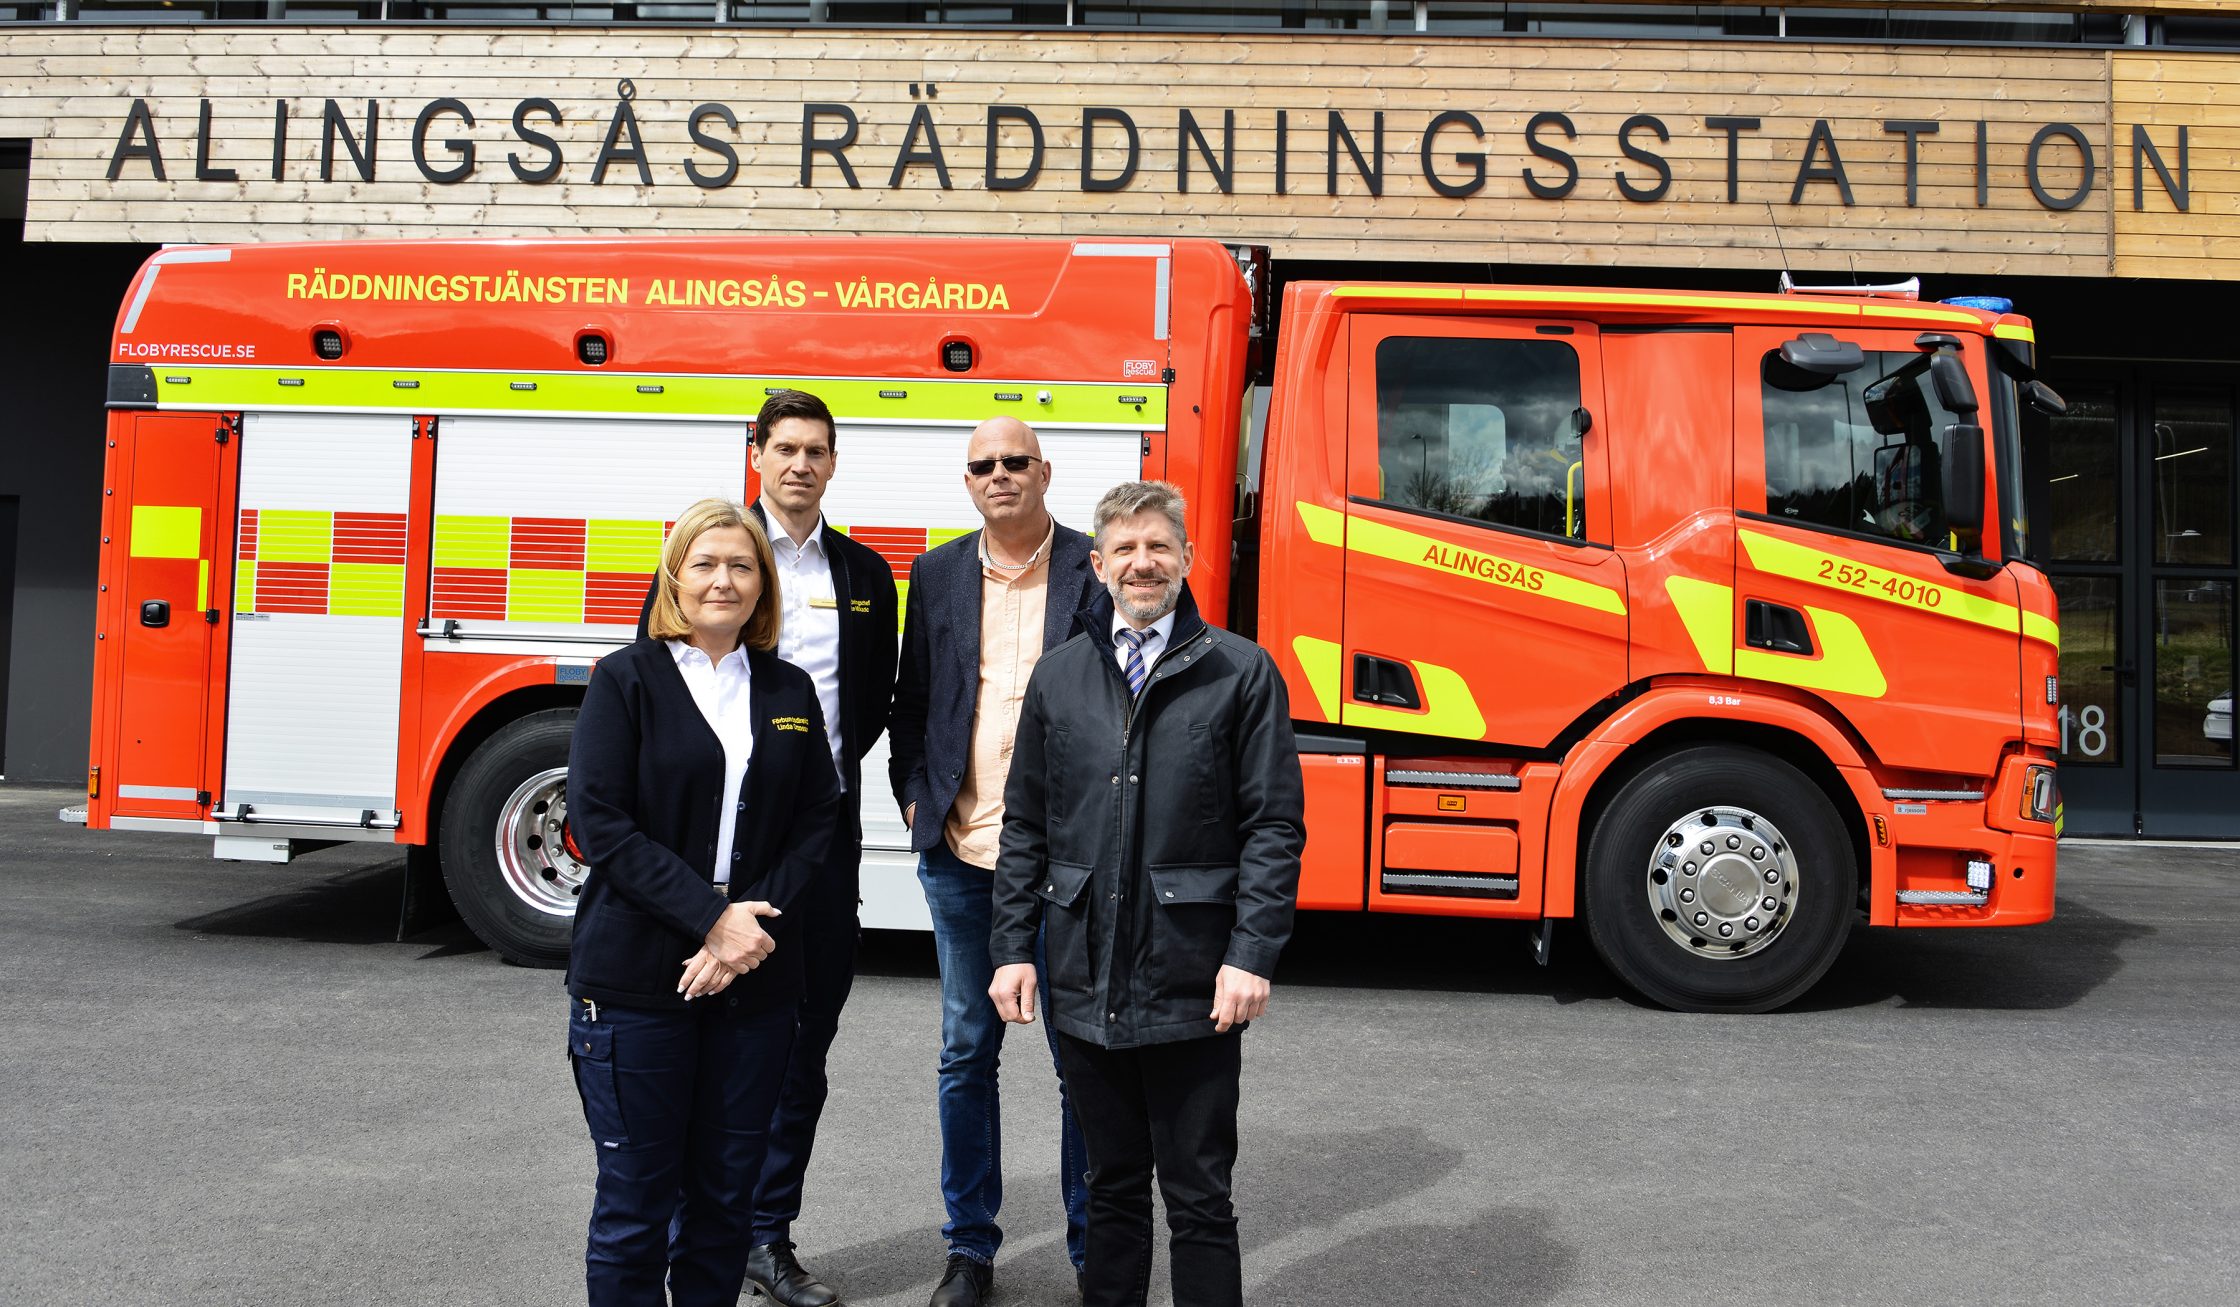 Linda Ottosson, Ante Mikacic, Bengt Hilmersson och Daniel Filipsson framför en brandbil.